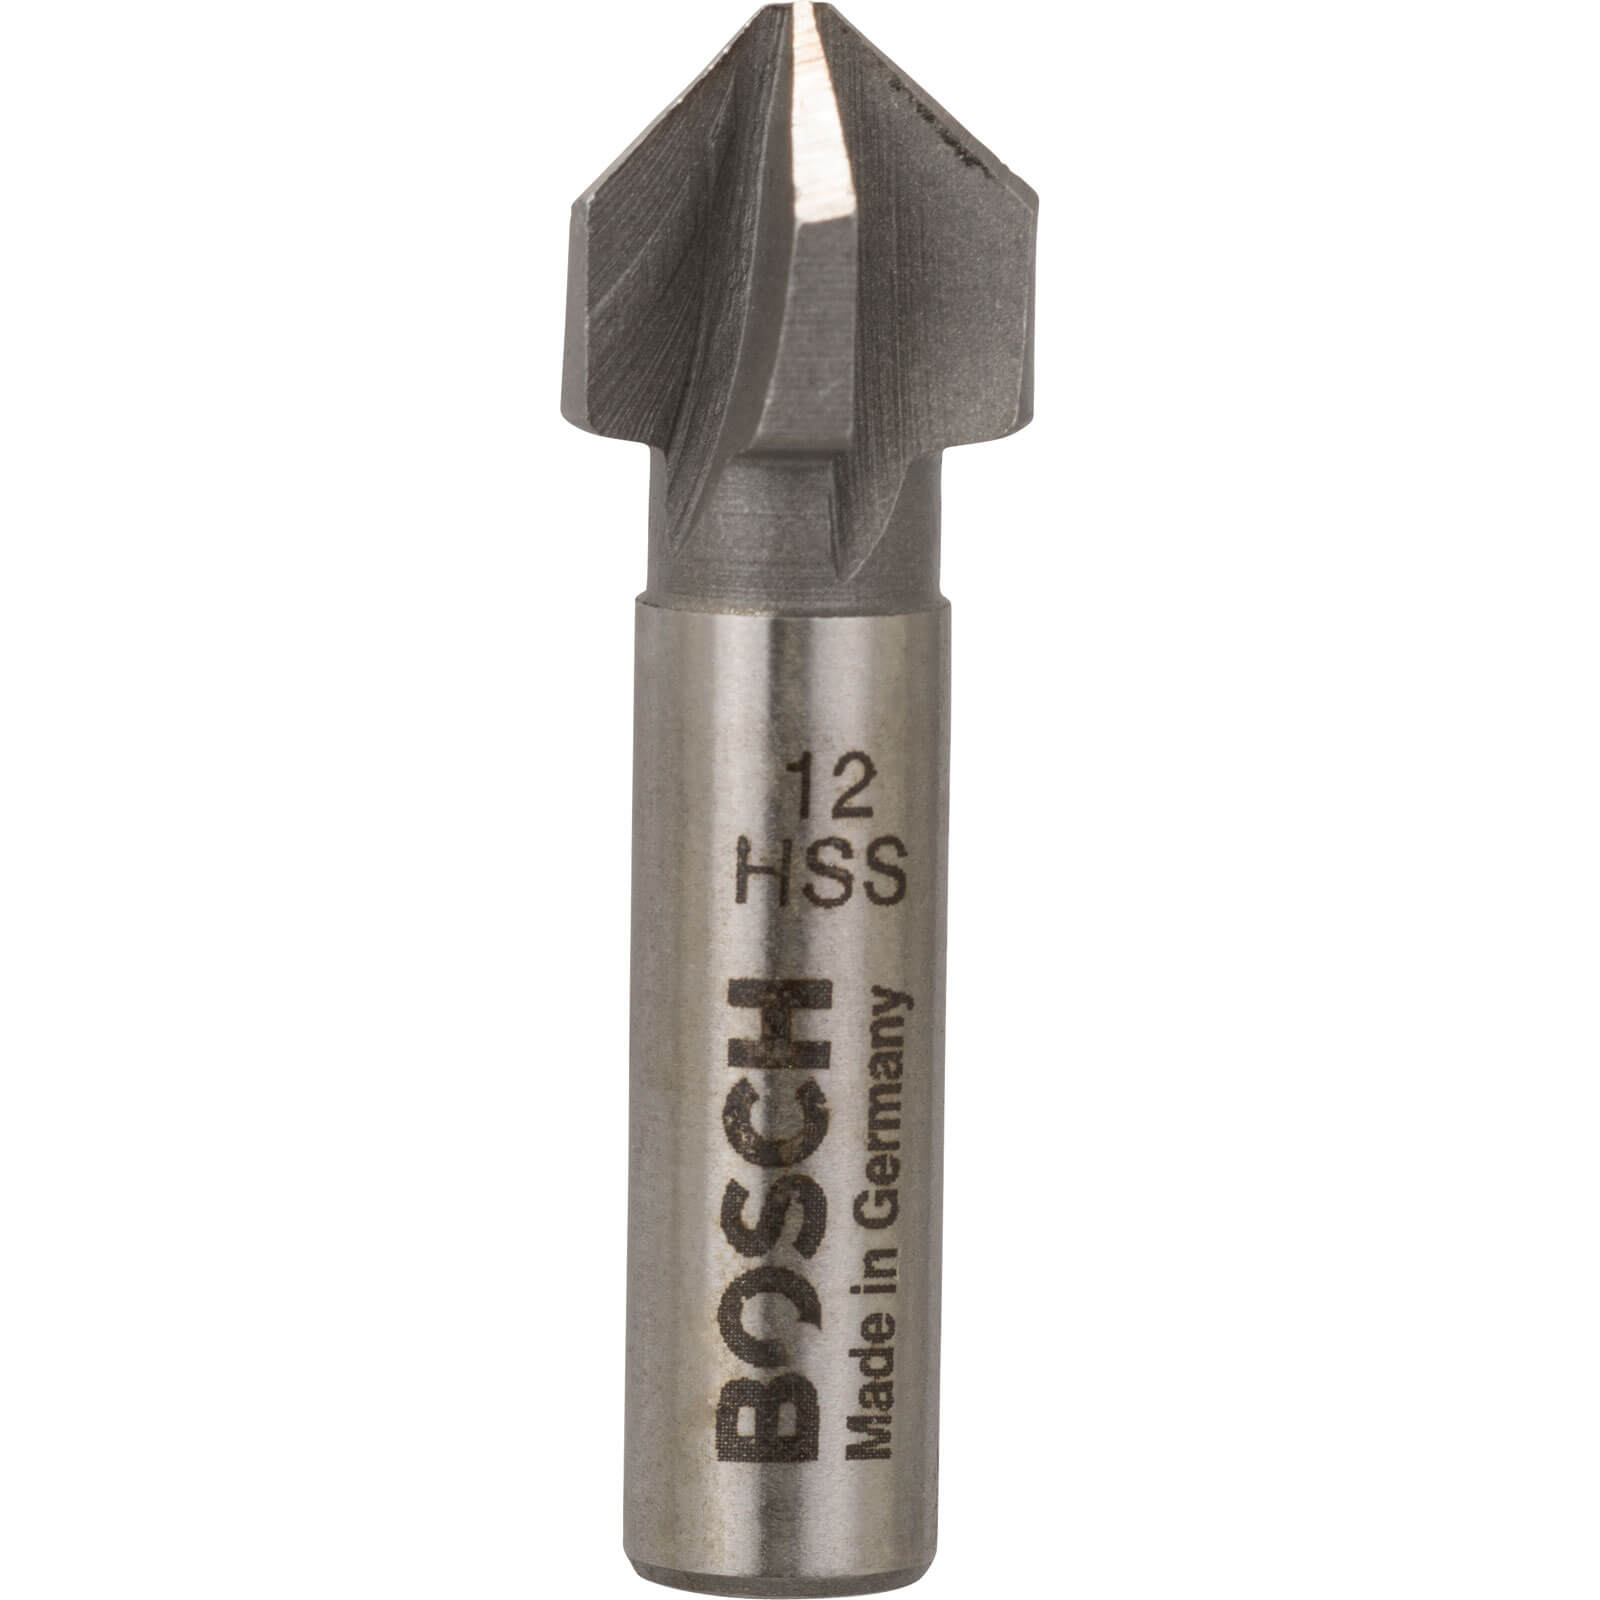 Photo of Bosch Hss Countersink Bit 12mm